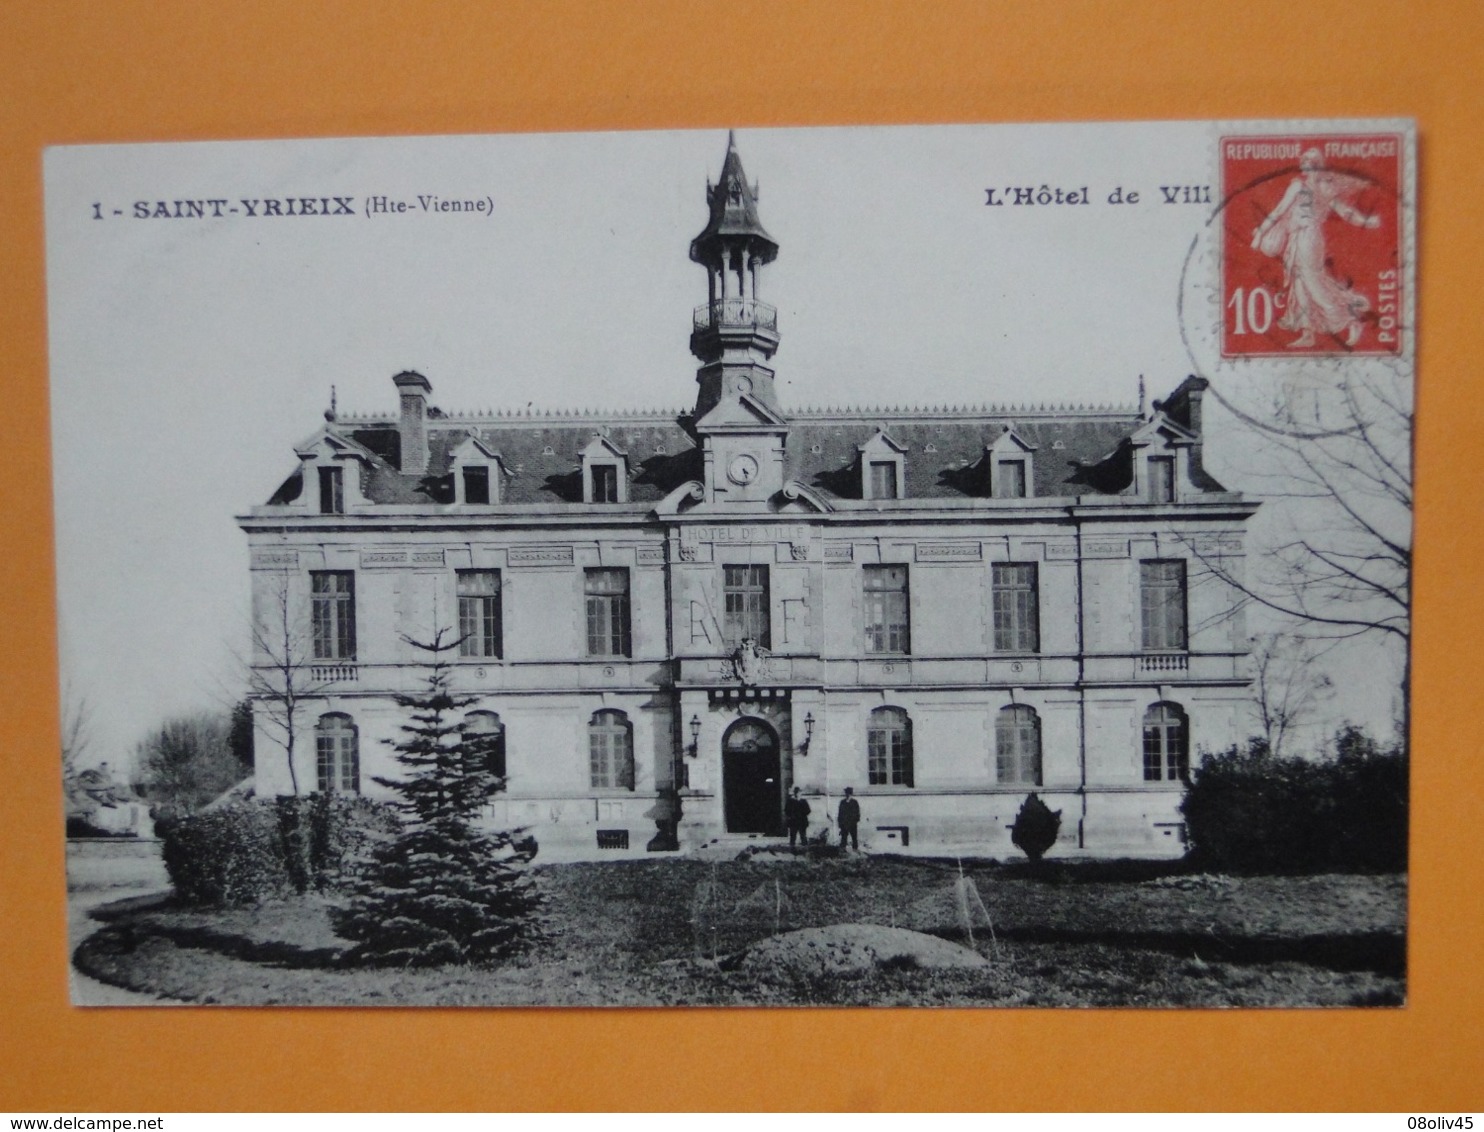 Joli Lot de 50 Cartes Postales Anciennes FRANCE  -- TOUTES ANIMEES - Voir les 50 scans - Lot N° 3